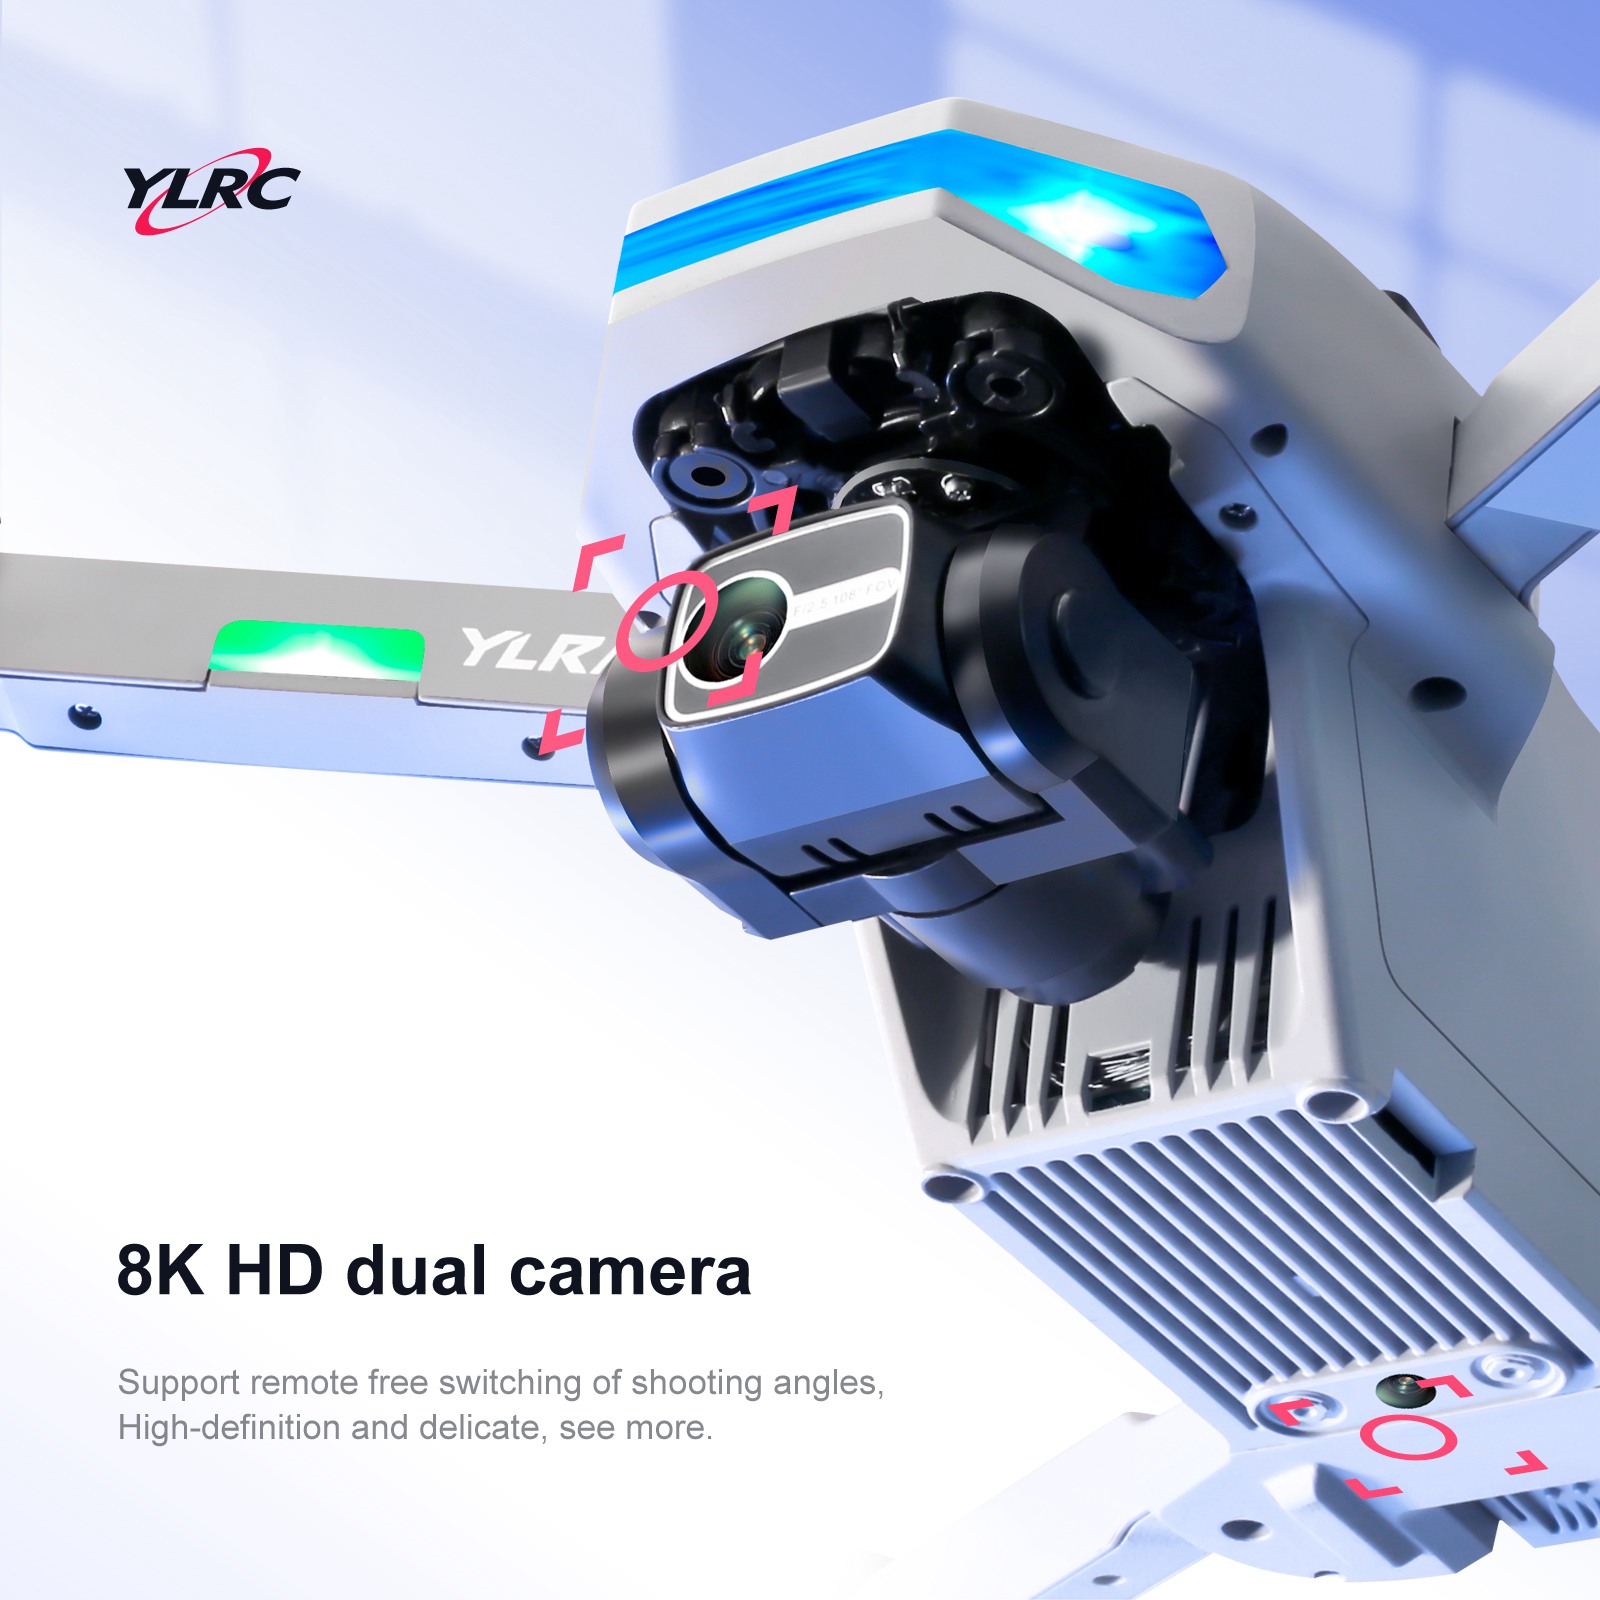 دو دوربین مجزا باکیفیت 8K برای ثبت تصاویر شما